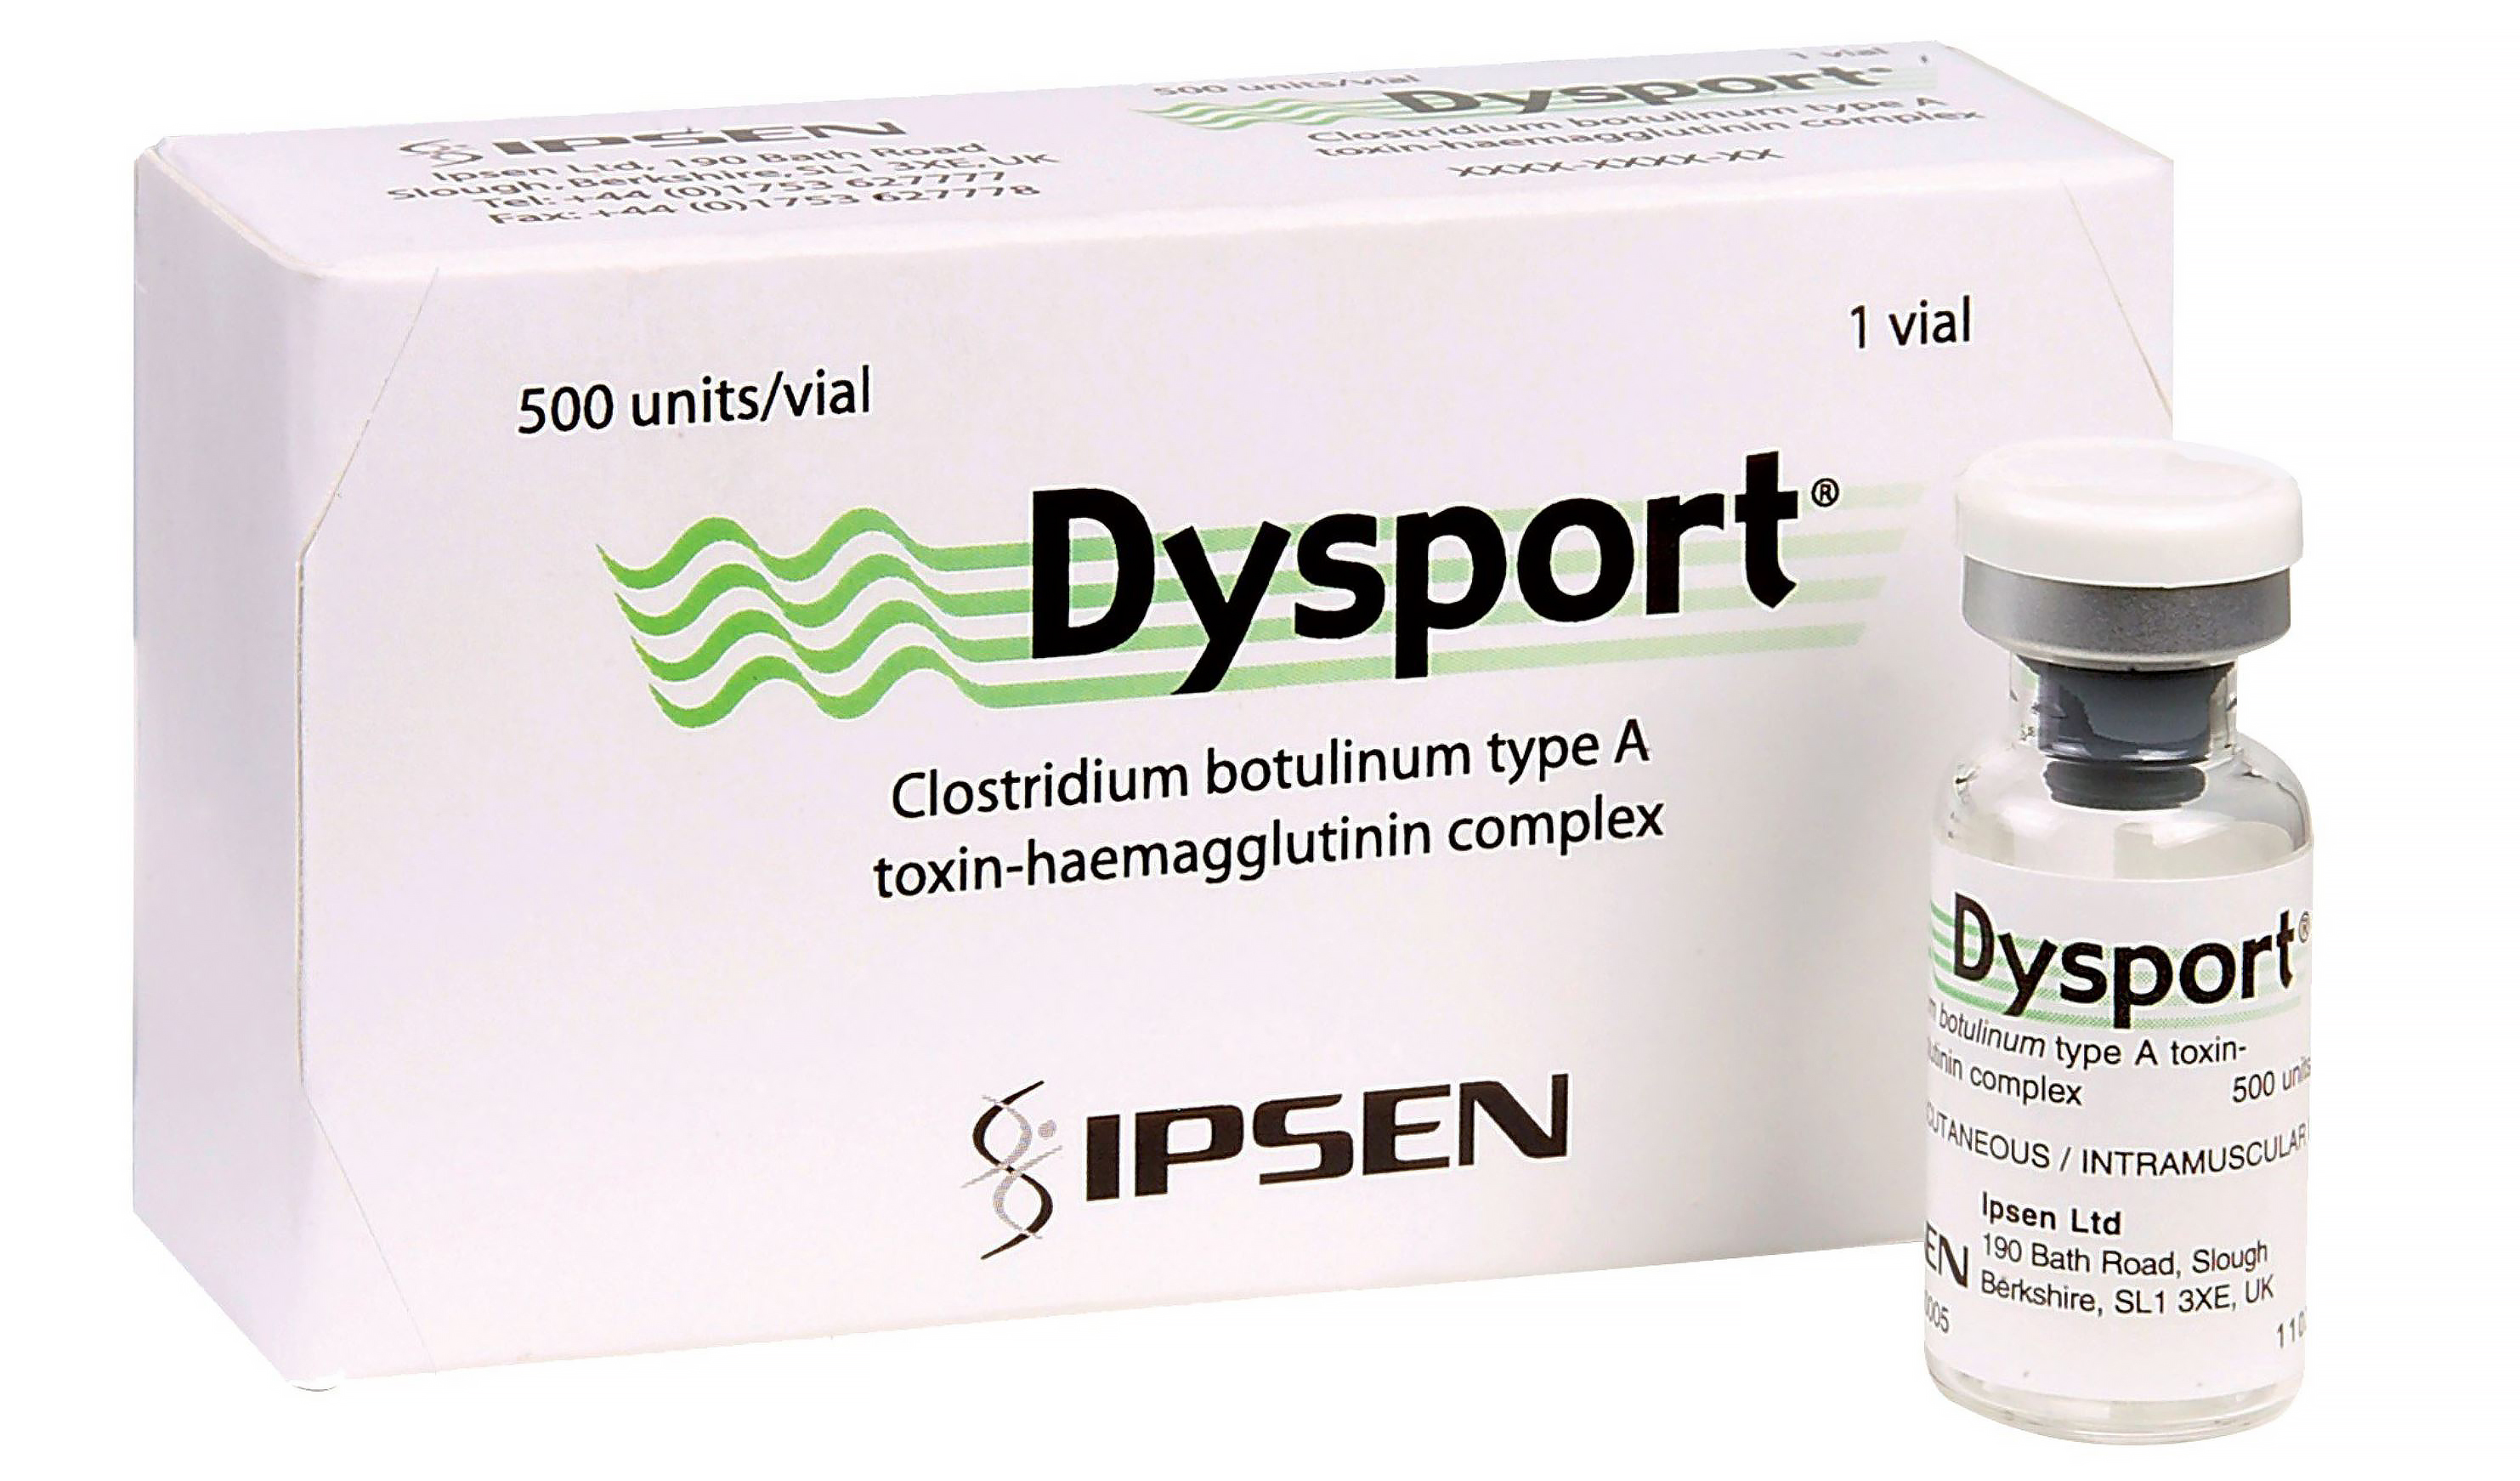 Название препарата Dysport происходит от слов Dystonia